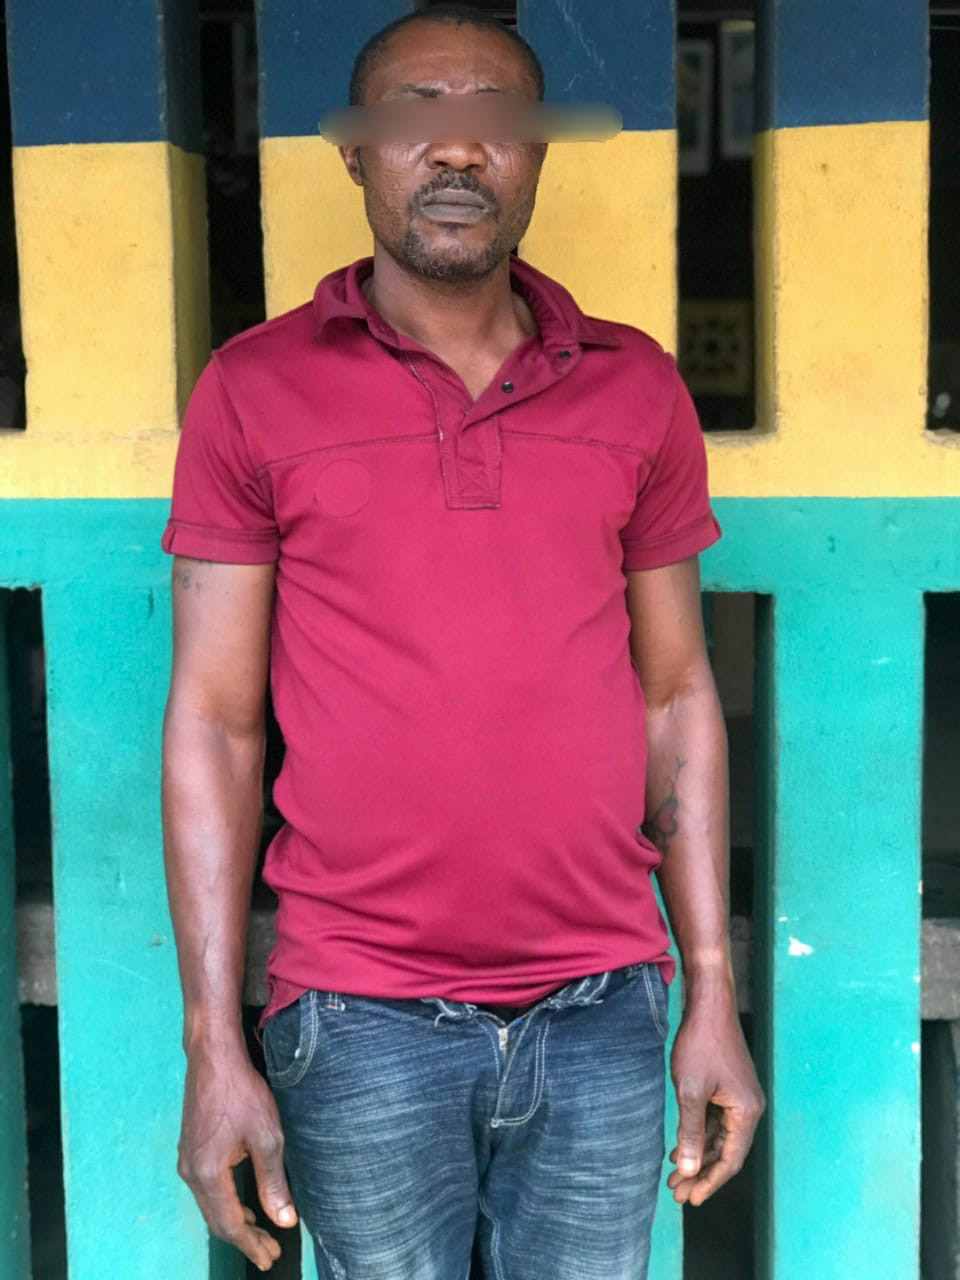 Un uomo di 40 anni identificato come Taofeek Sulaiman è stato arrestato lunedì 24 ottobre da uomini del comando di polizia dello stato di Ogun per avere una conoscenza carnale illegale della figliastra di 13 anni (nome nascosto).